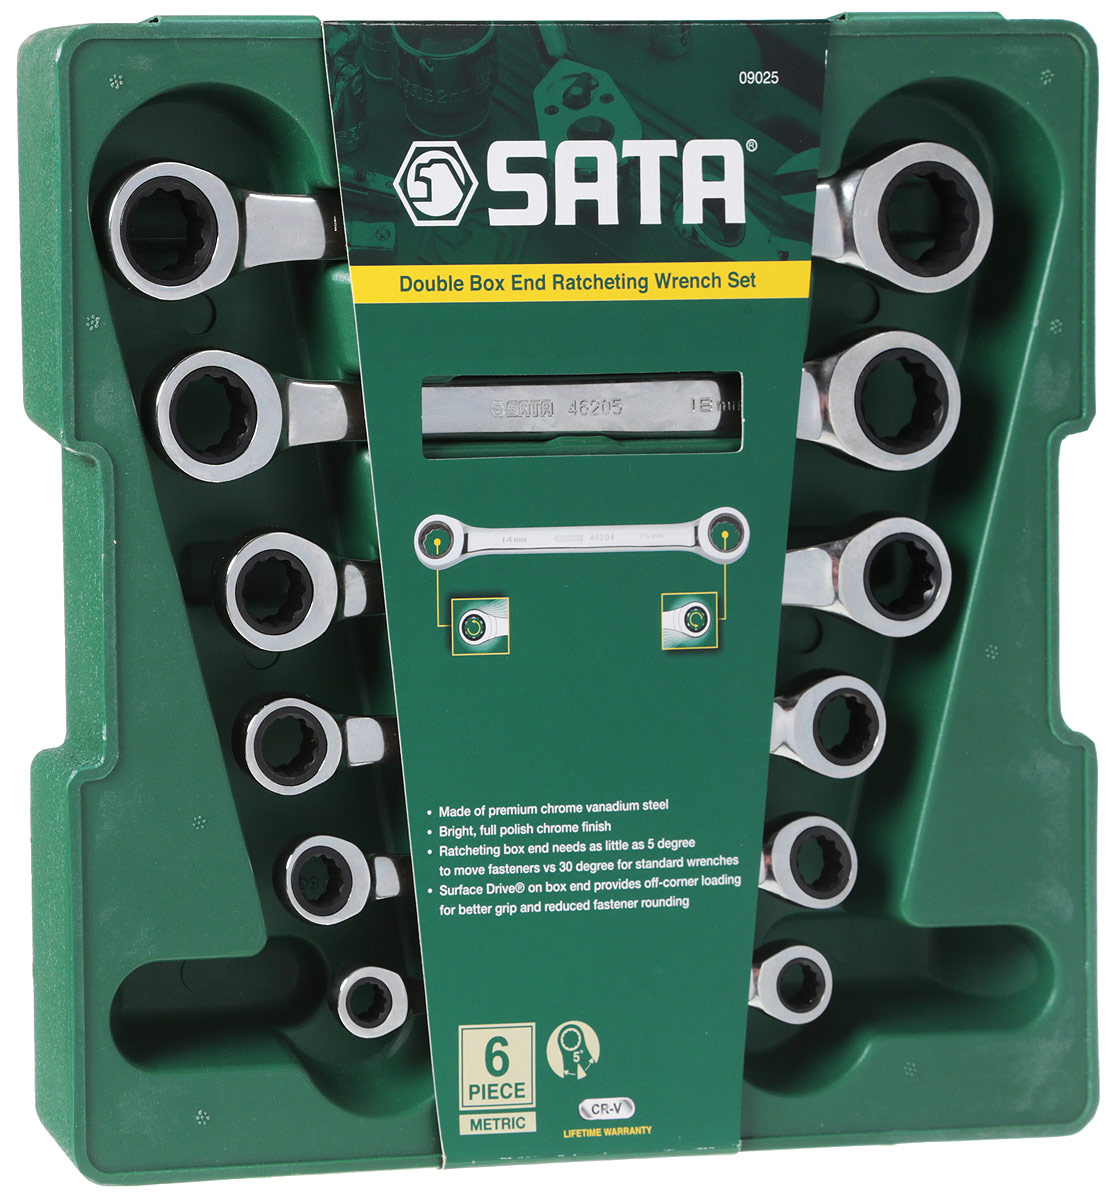  ключей SATA 6пр. 09025 —  в е  с .